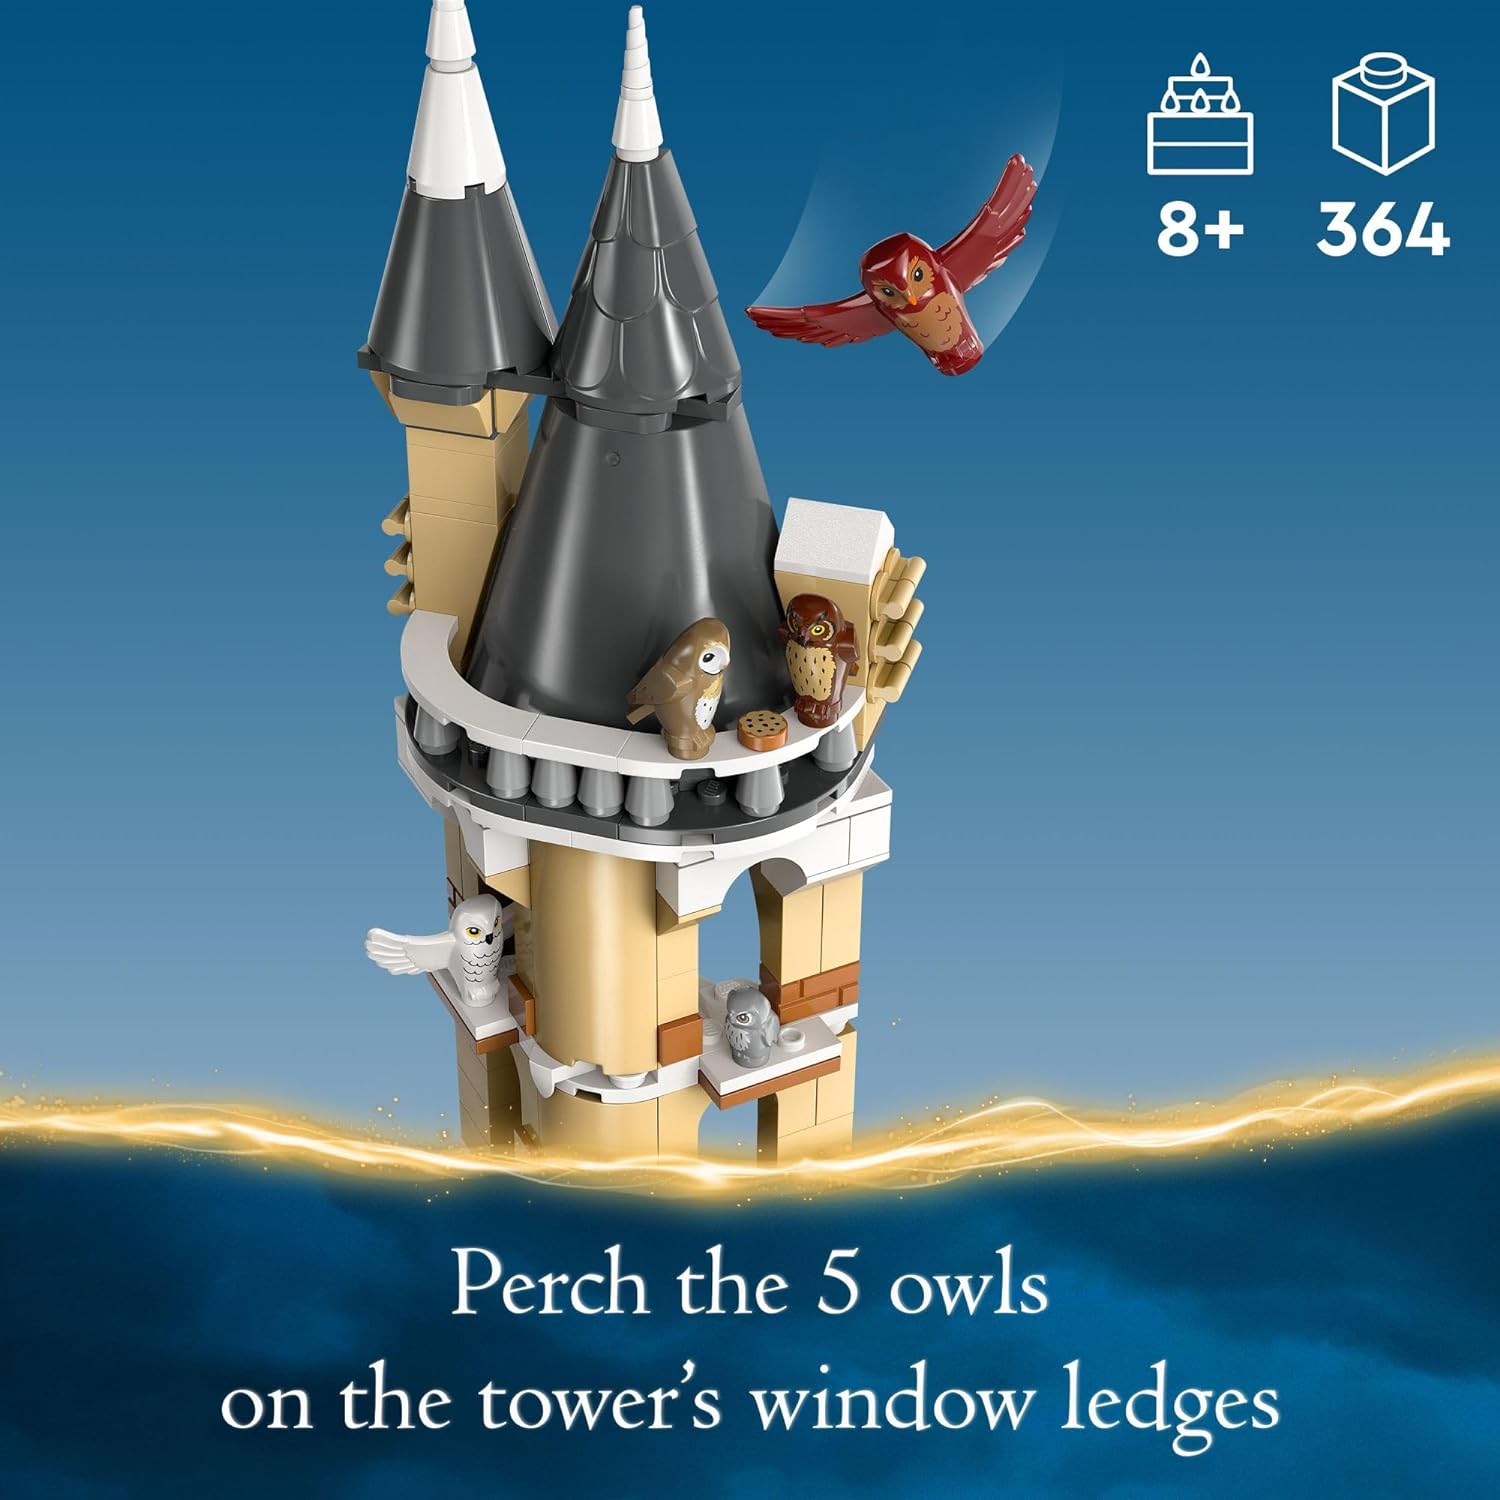 ليجو 76430 لعبة قلعة هاري بوتر هوجورتس البومة، لعبة عالم السحرة الخيالية للبنات والأولاد، مجموعة لعب قلعة هاري بوتر مع 3 شخصيات.